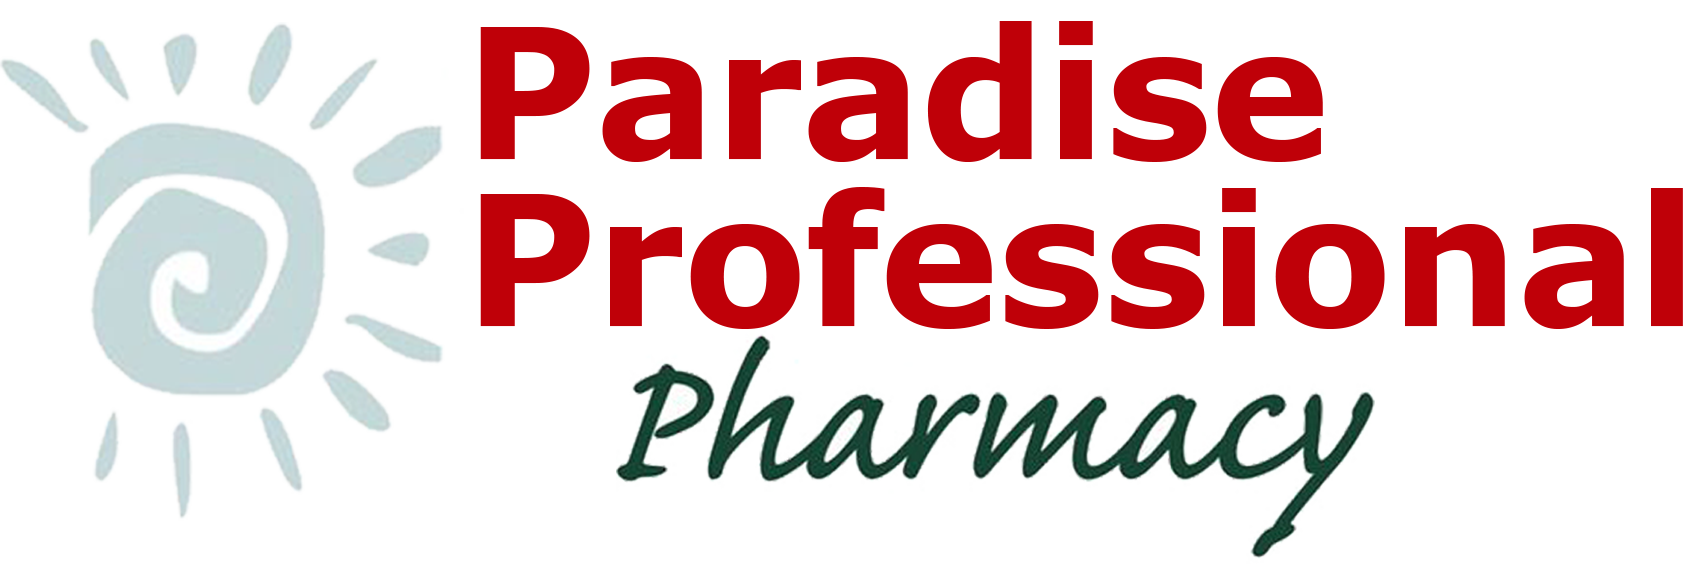 Paradise Professional Pharmacy